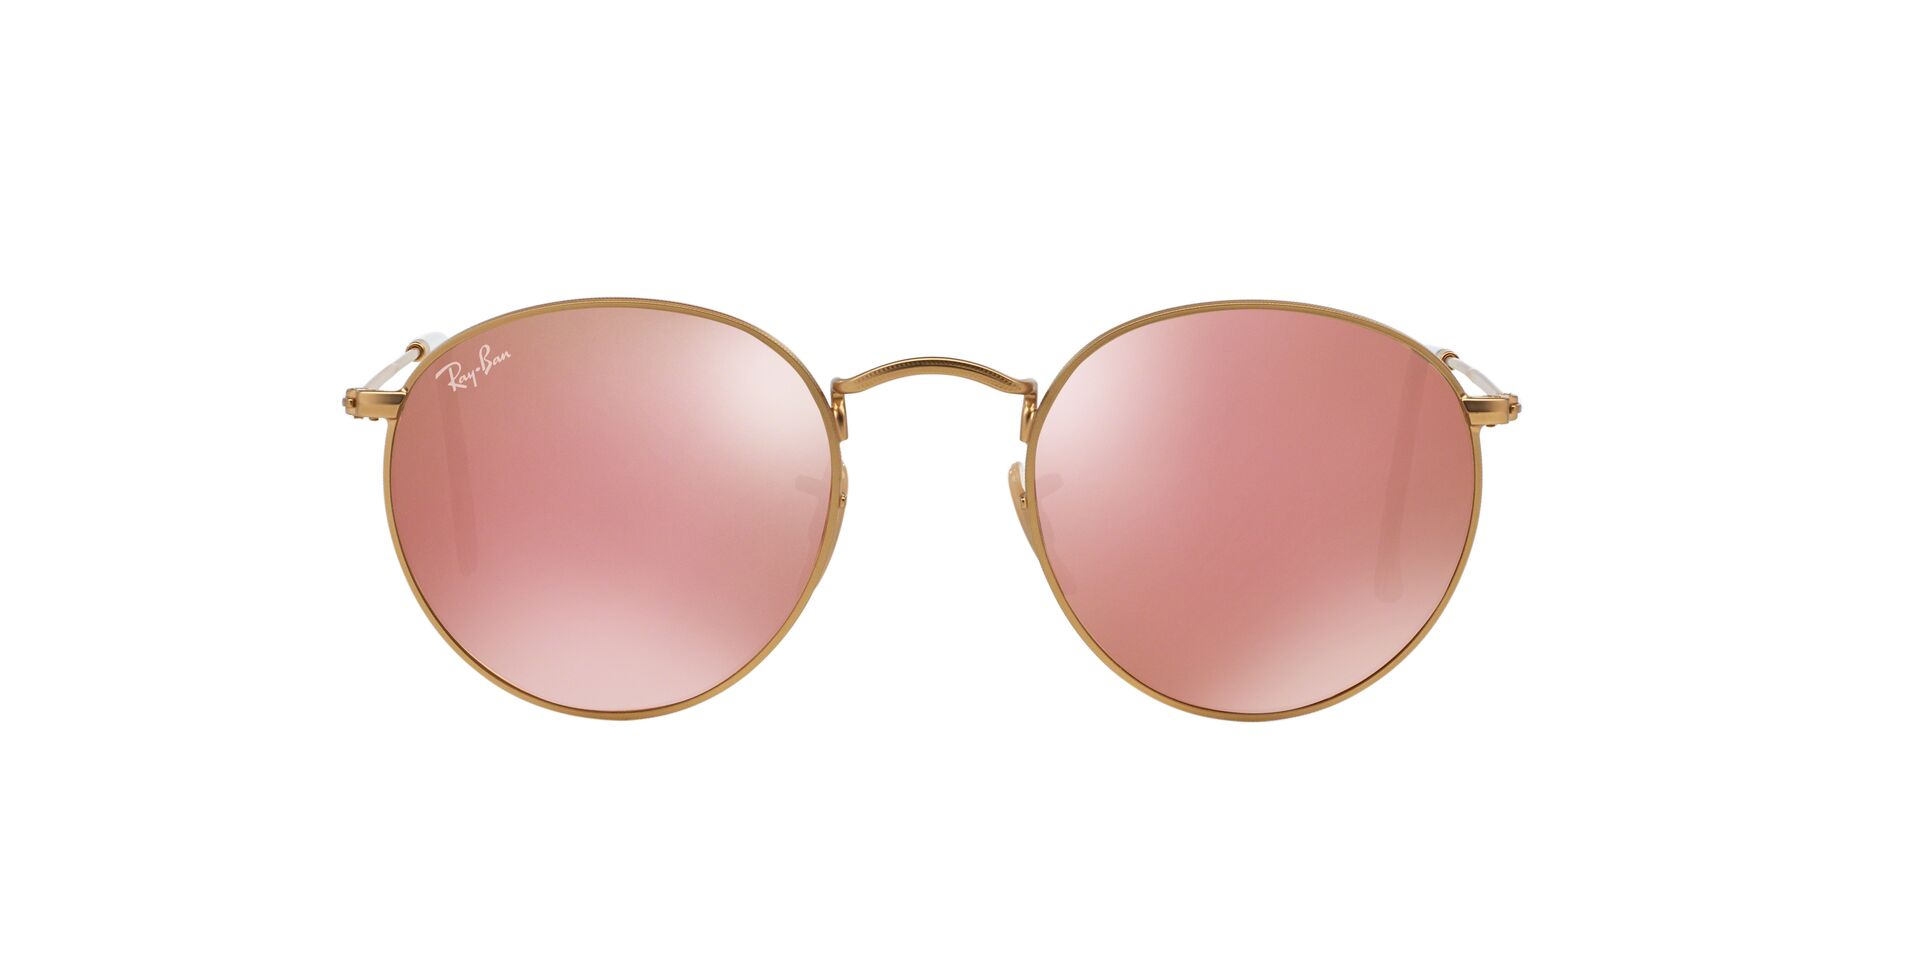 𝓒𝓪𝓷𝓭𝔂 🎀 𝓛𝓲𝓬𝓲𝓸𝓾𝓼 | Cat eye sunglasses women, Womens glasses,  Mirrored sunglasses